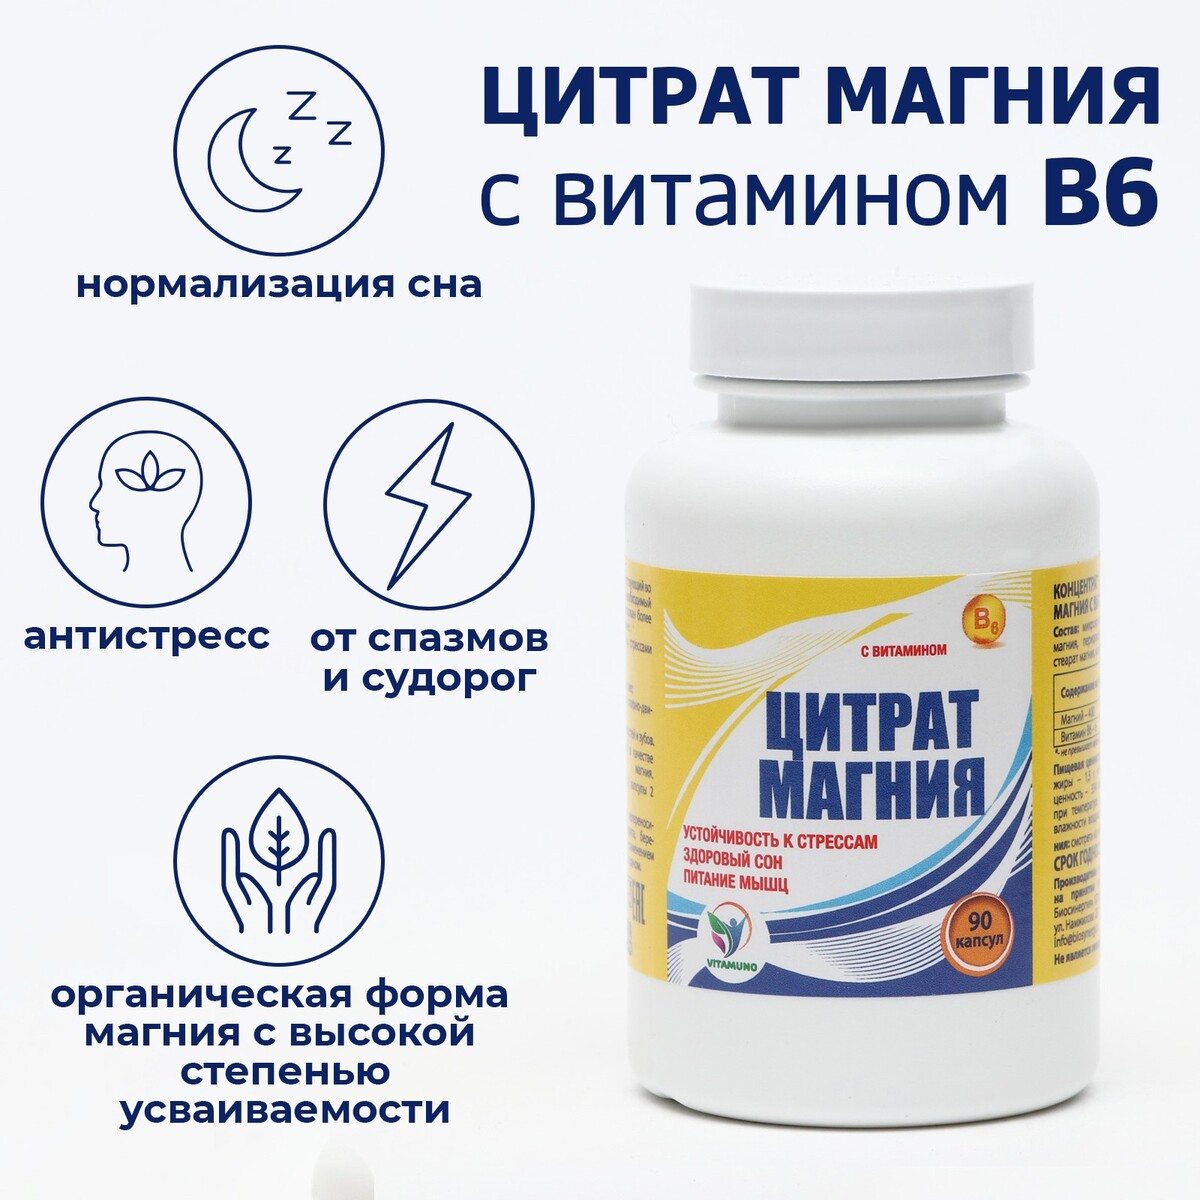 Цитрат магния с витамином в6 vitamuno, для борьбы со стрессом и усталостью, 90 капсул радикал 165 сантиметров борьбы